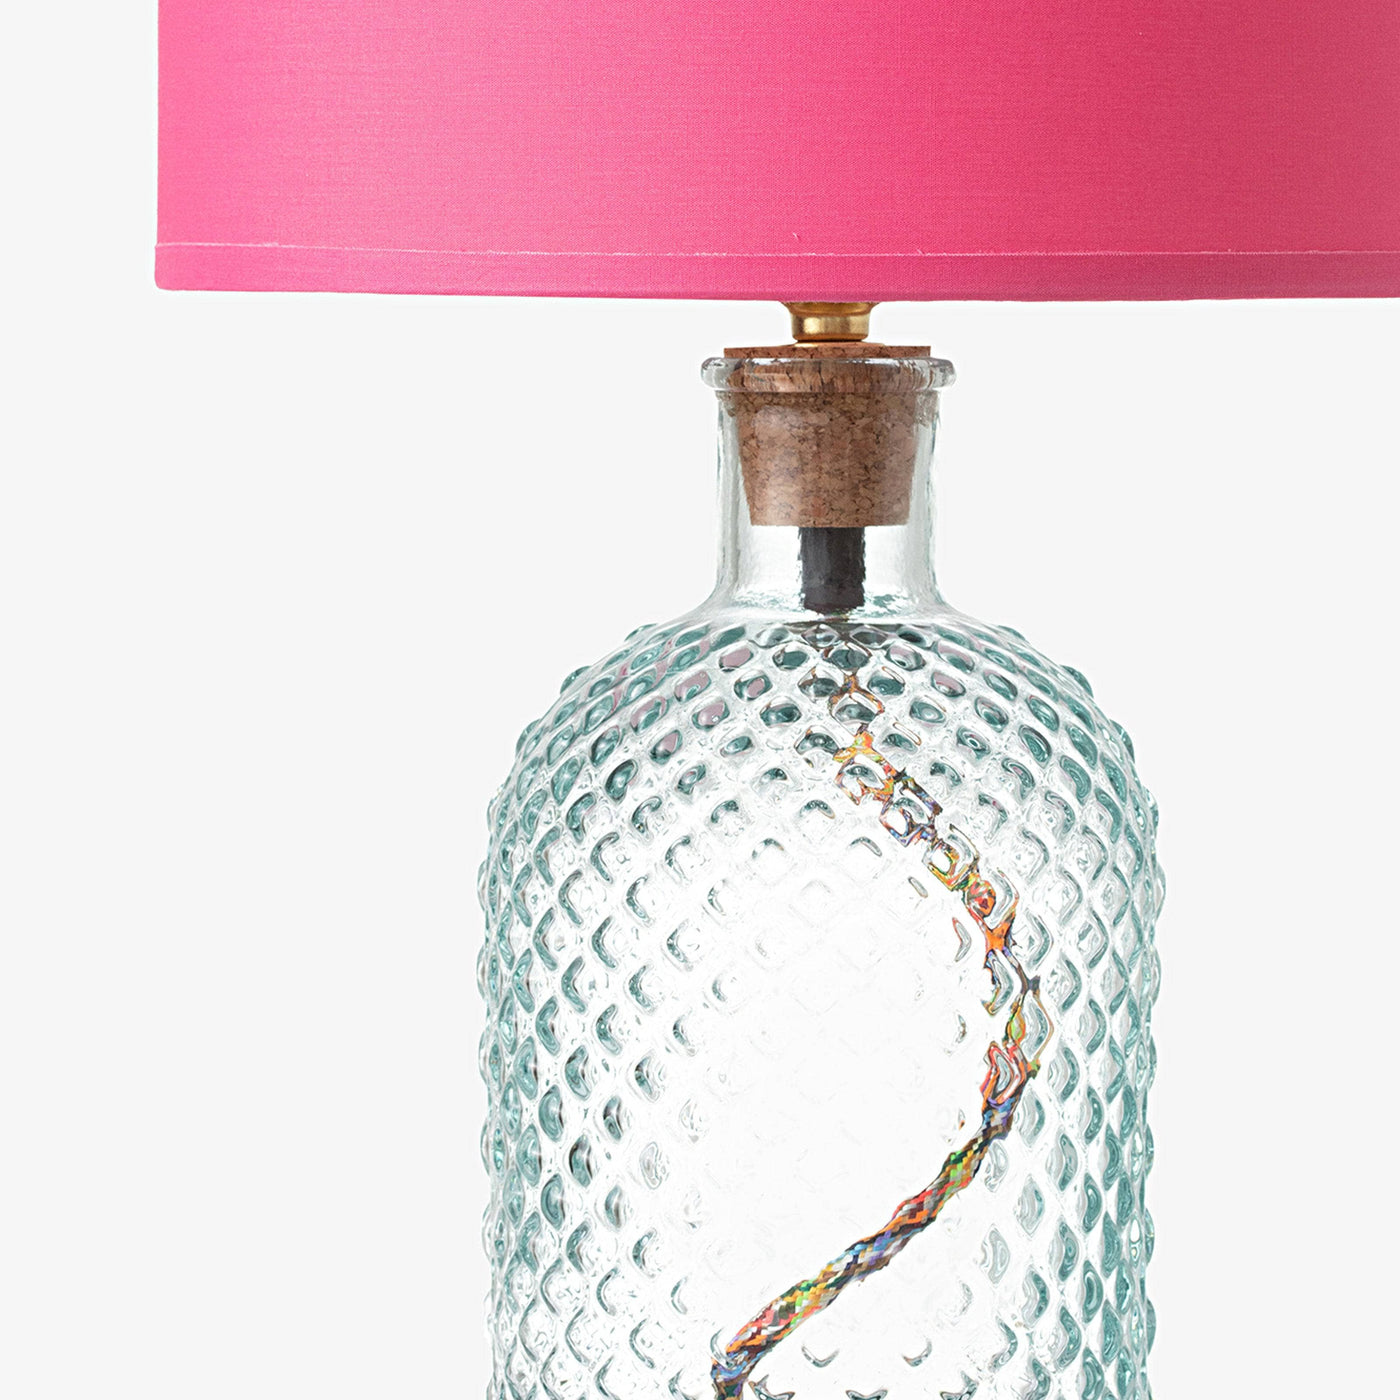 Alnair Diamond Cut Glass Table Lamp, Clear, 34 cm Table & Bedside Lamps sazy.com